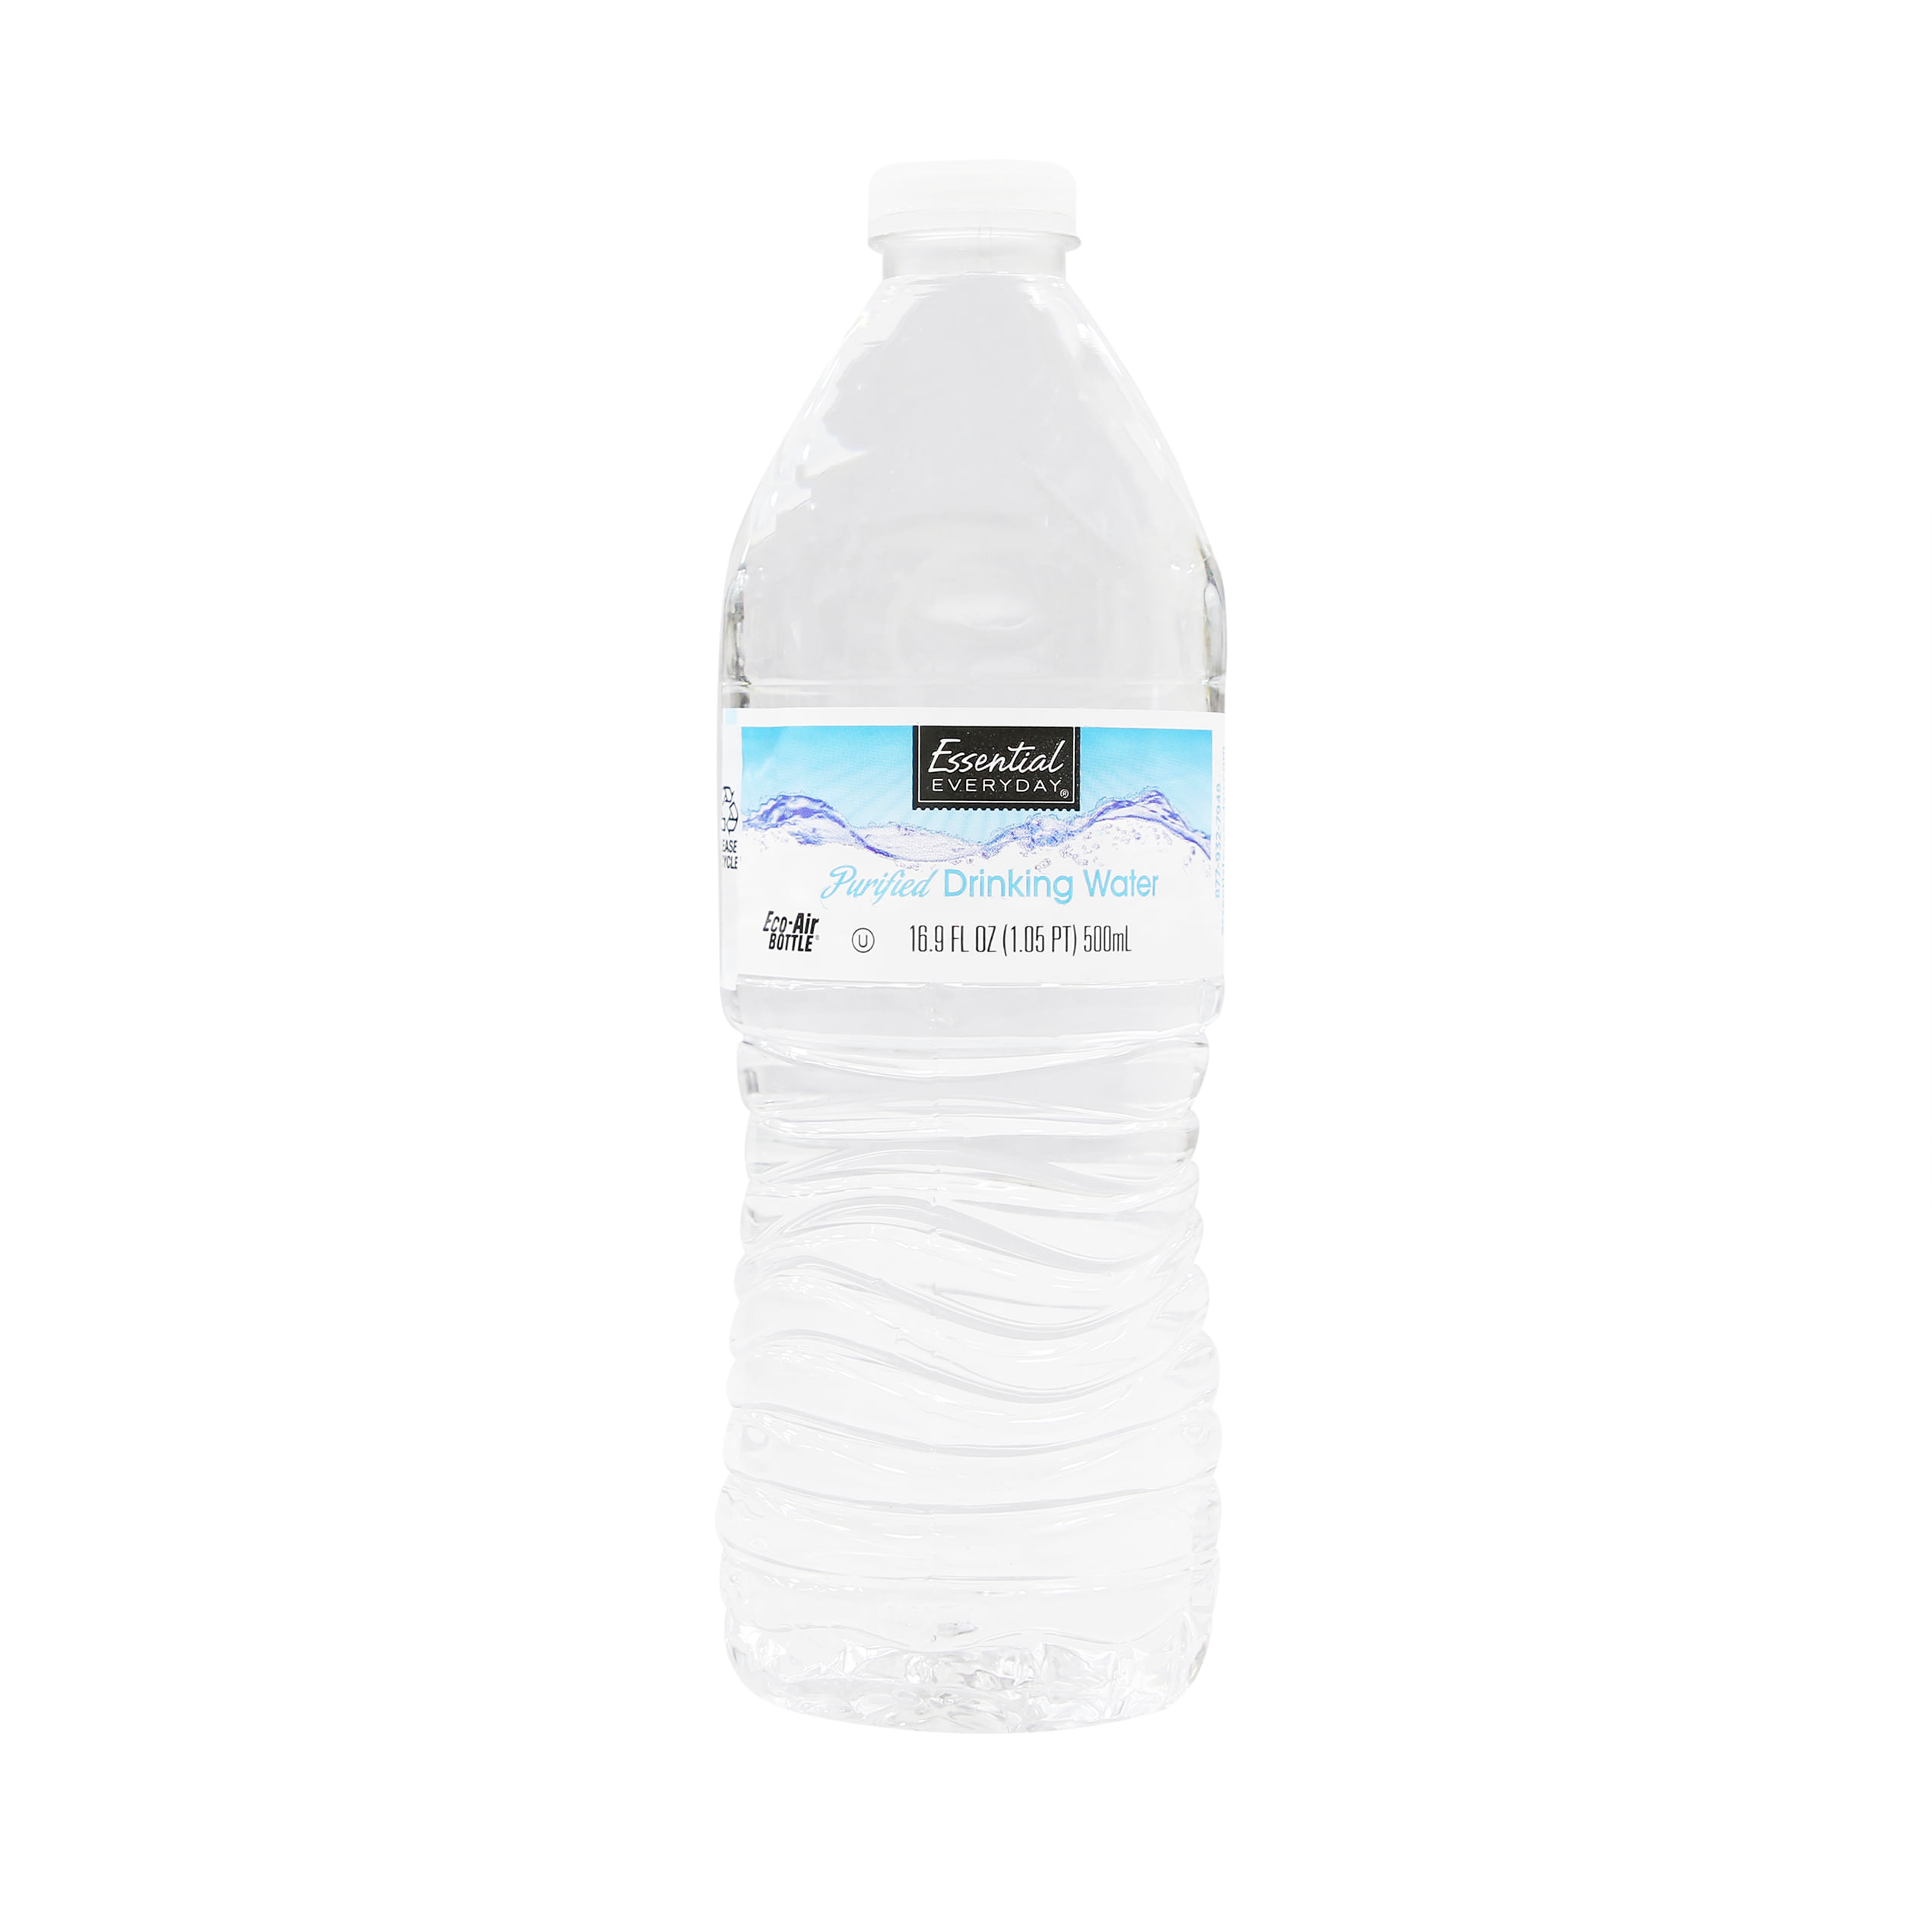 En consecuencia Papúa Nueva Guinea cámara Agua essential everyday bote 500 ml